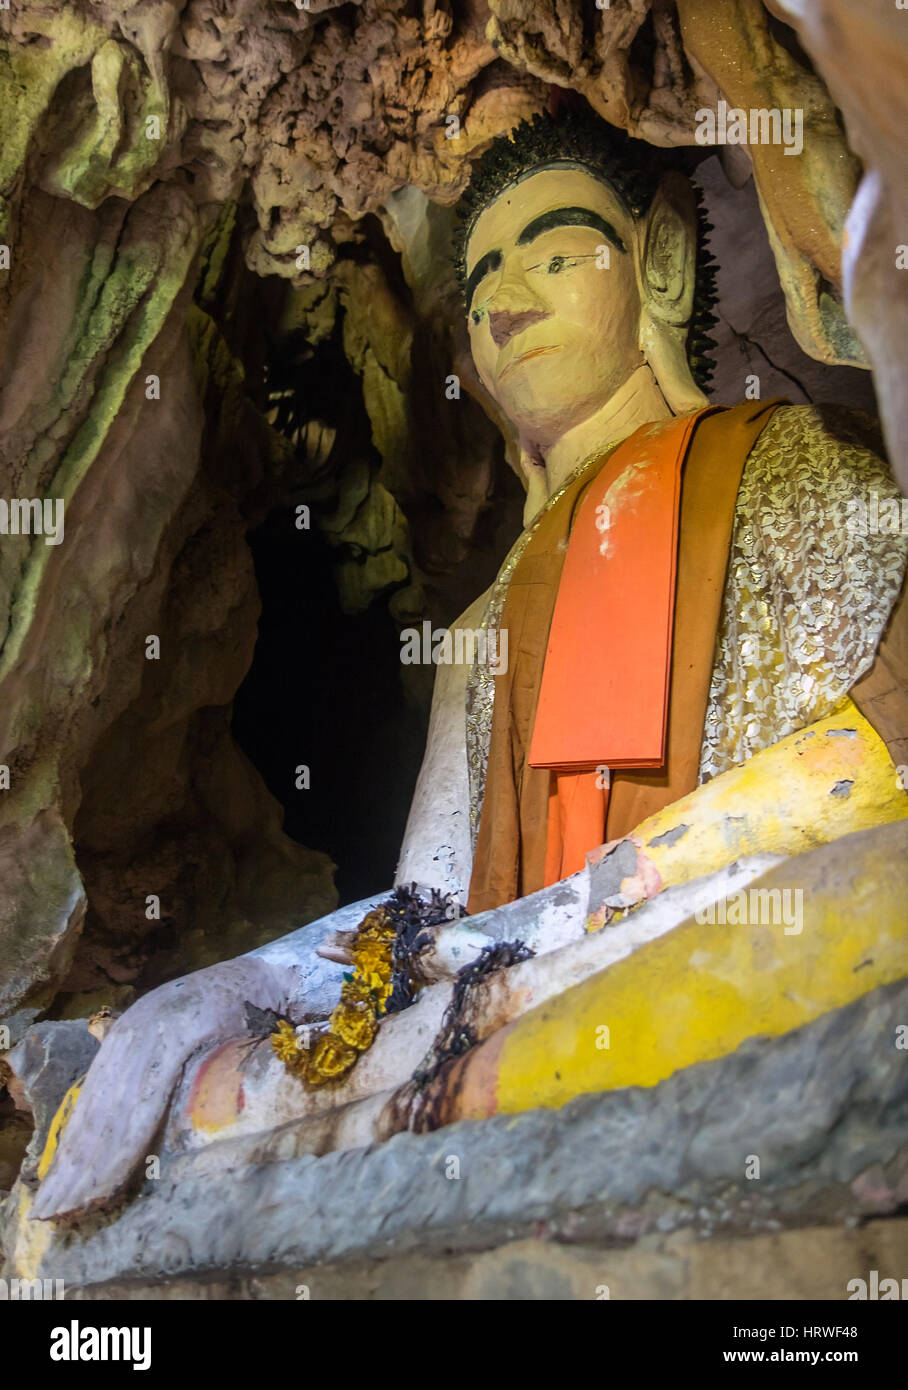 Estatua de buda sentado en una cueva. Vestida estatua de Buda sentado en postura de meditación, Laos. Foto de stock